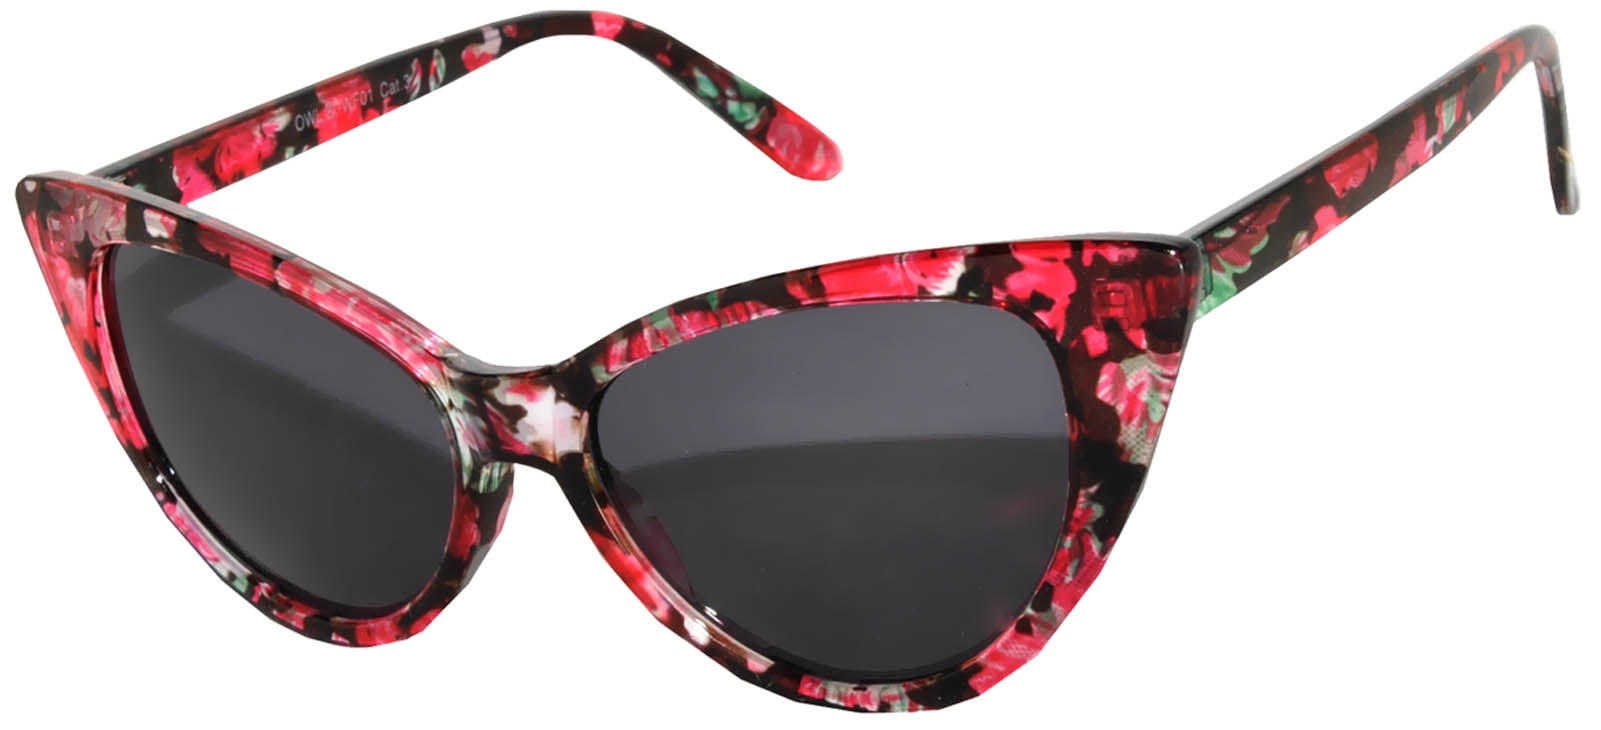 Retro Women's Cat Eye Vintage Sunglasses UV Protection Flower Red Frame ...